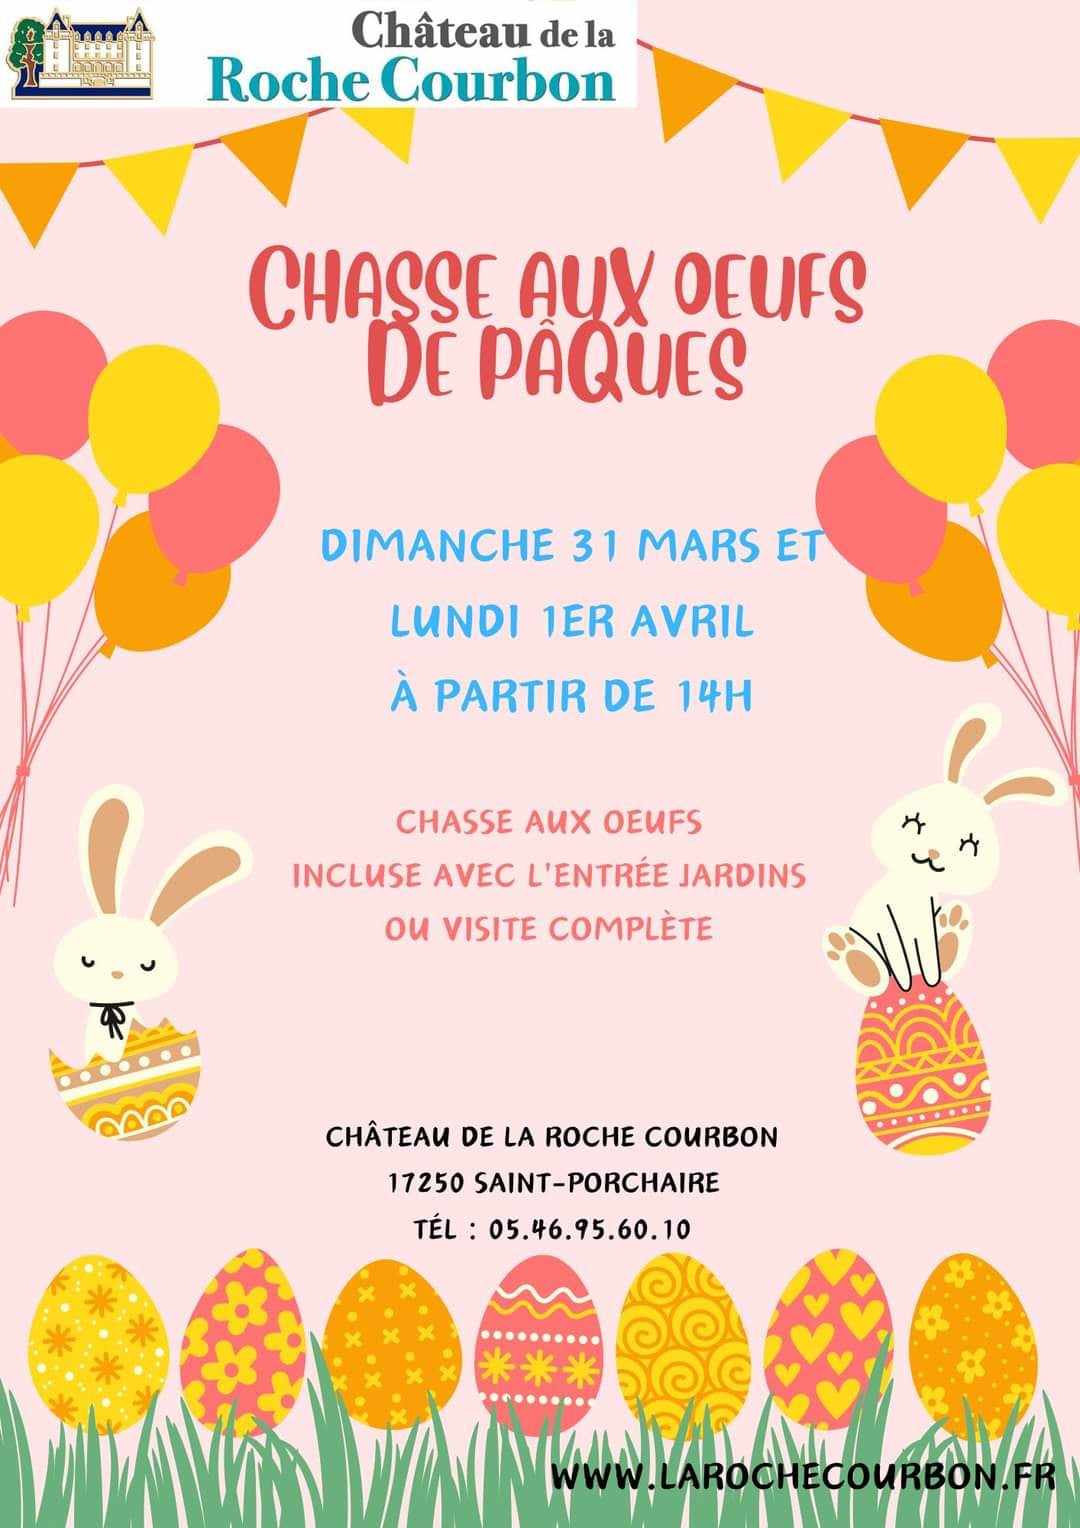 Affiche pour la chasse aux oeufs organisée par le Château de la Roche Courbon du dimanche 31 mars au lundi 1er avril